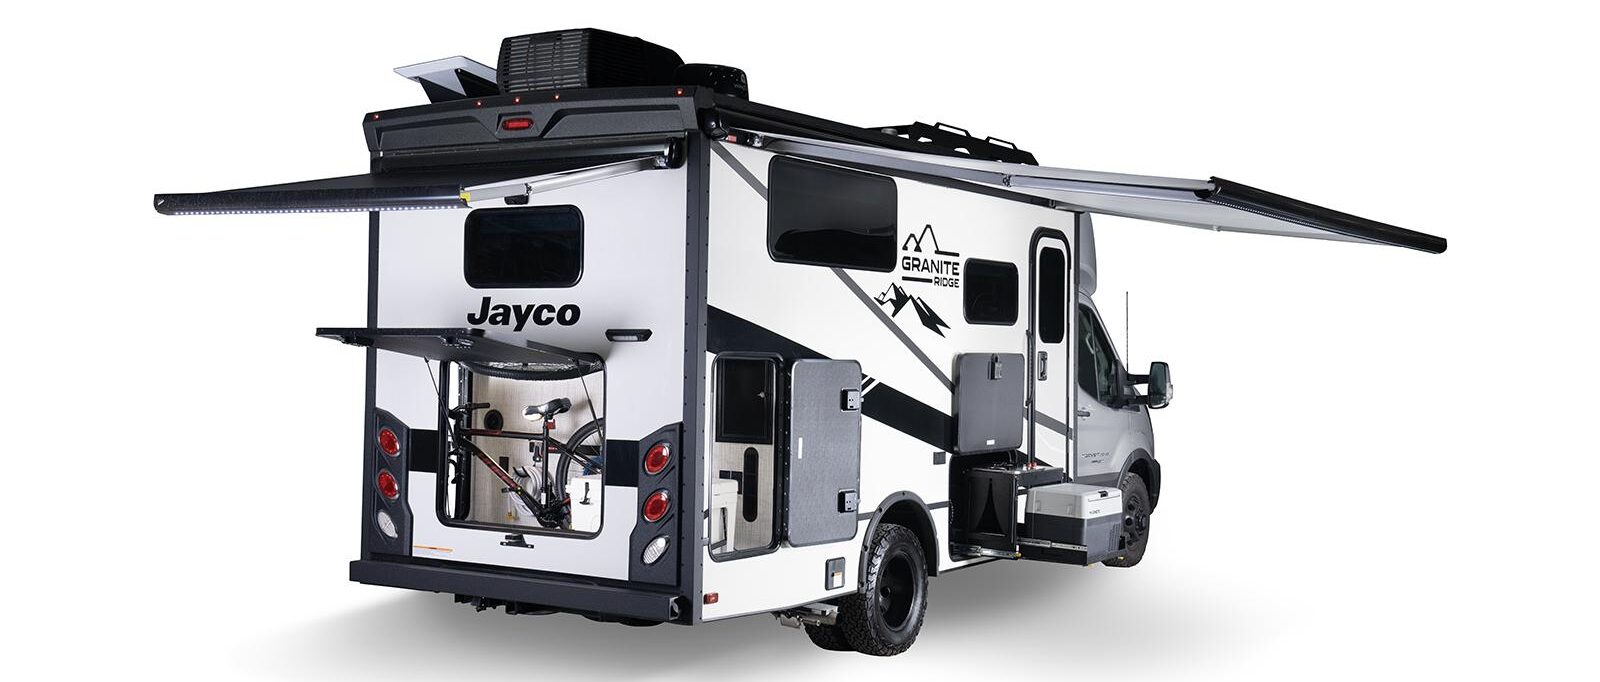 Автодом Jayco класса C Granite Ridge — лучшее место для жизни в дороге для предприимчивых путешественников